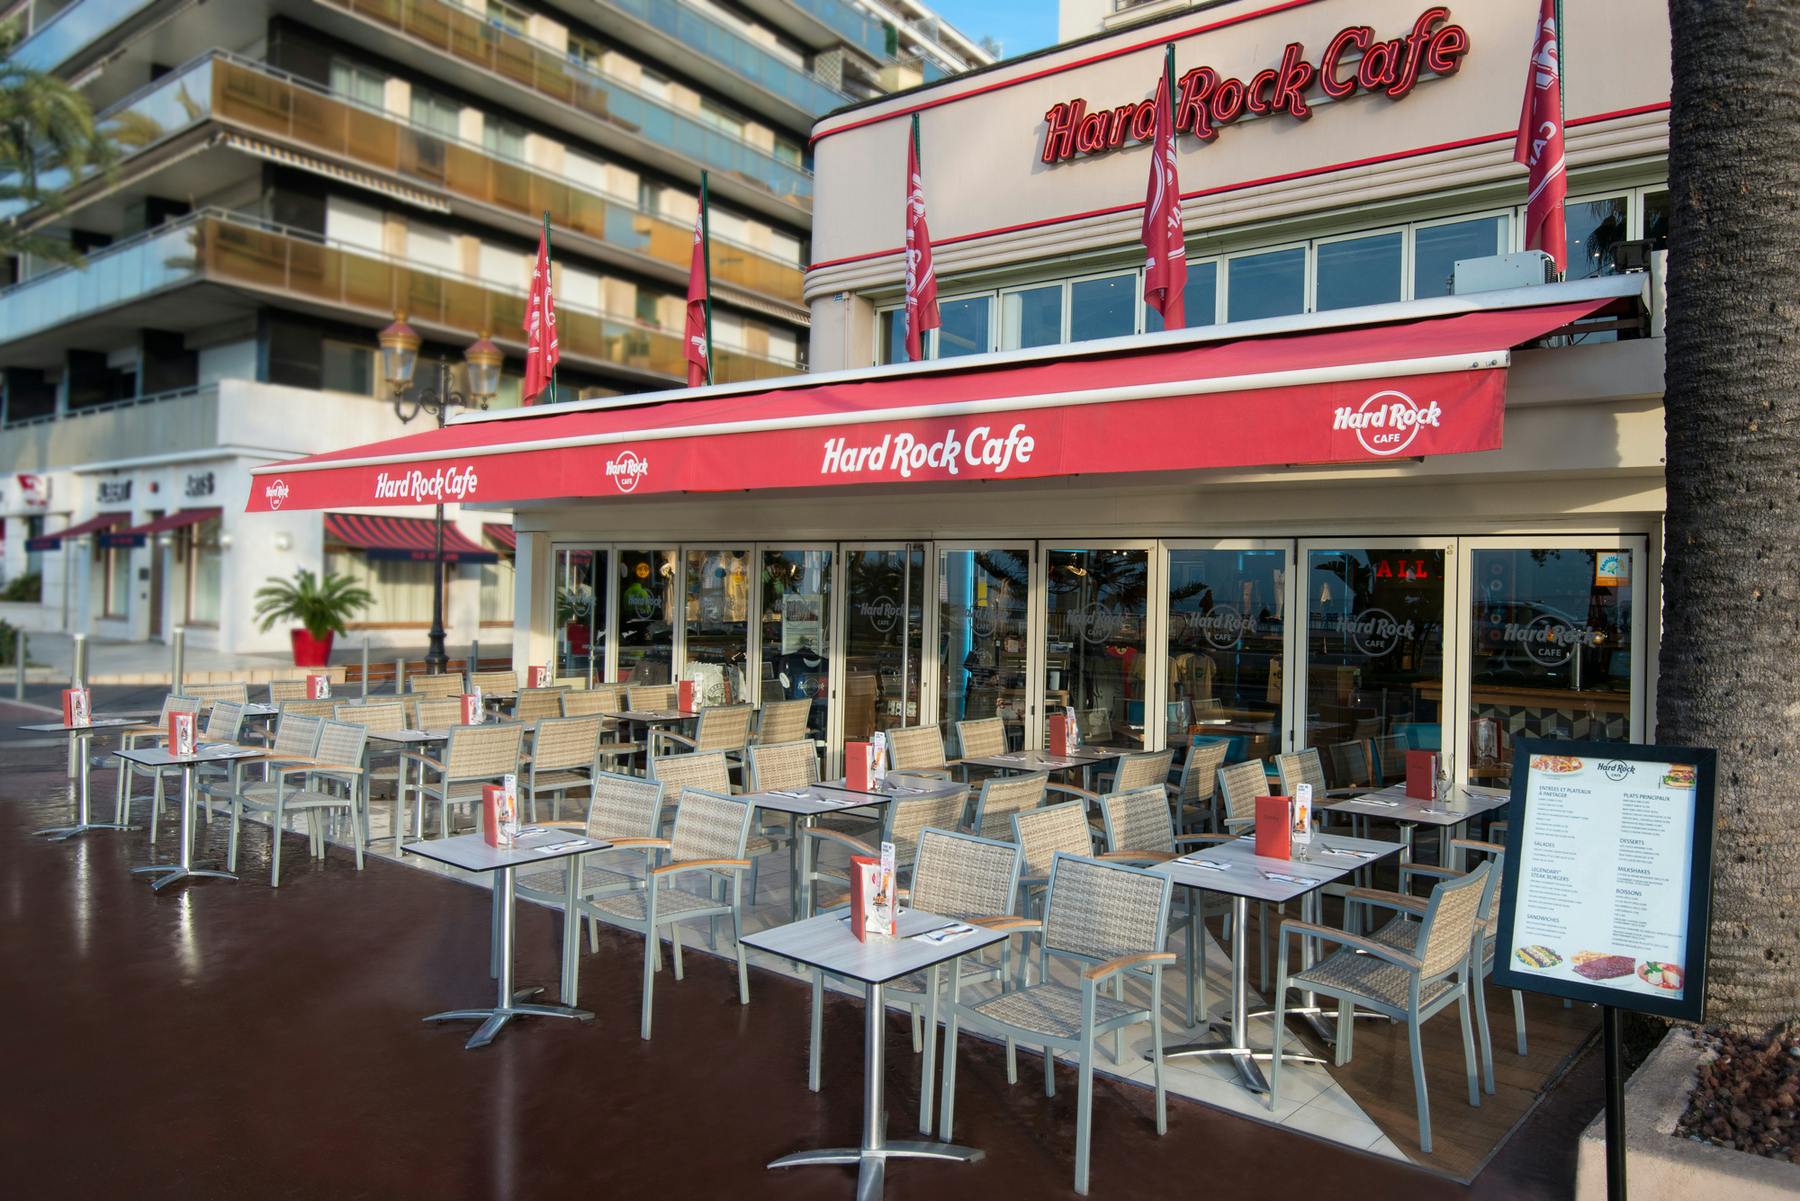 Hard Rock Cafe Nice: posto a sedere prioritario con menù